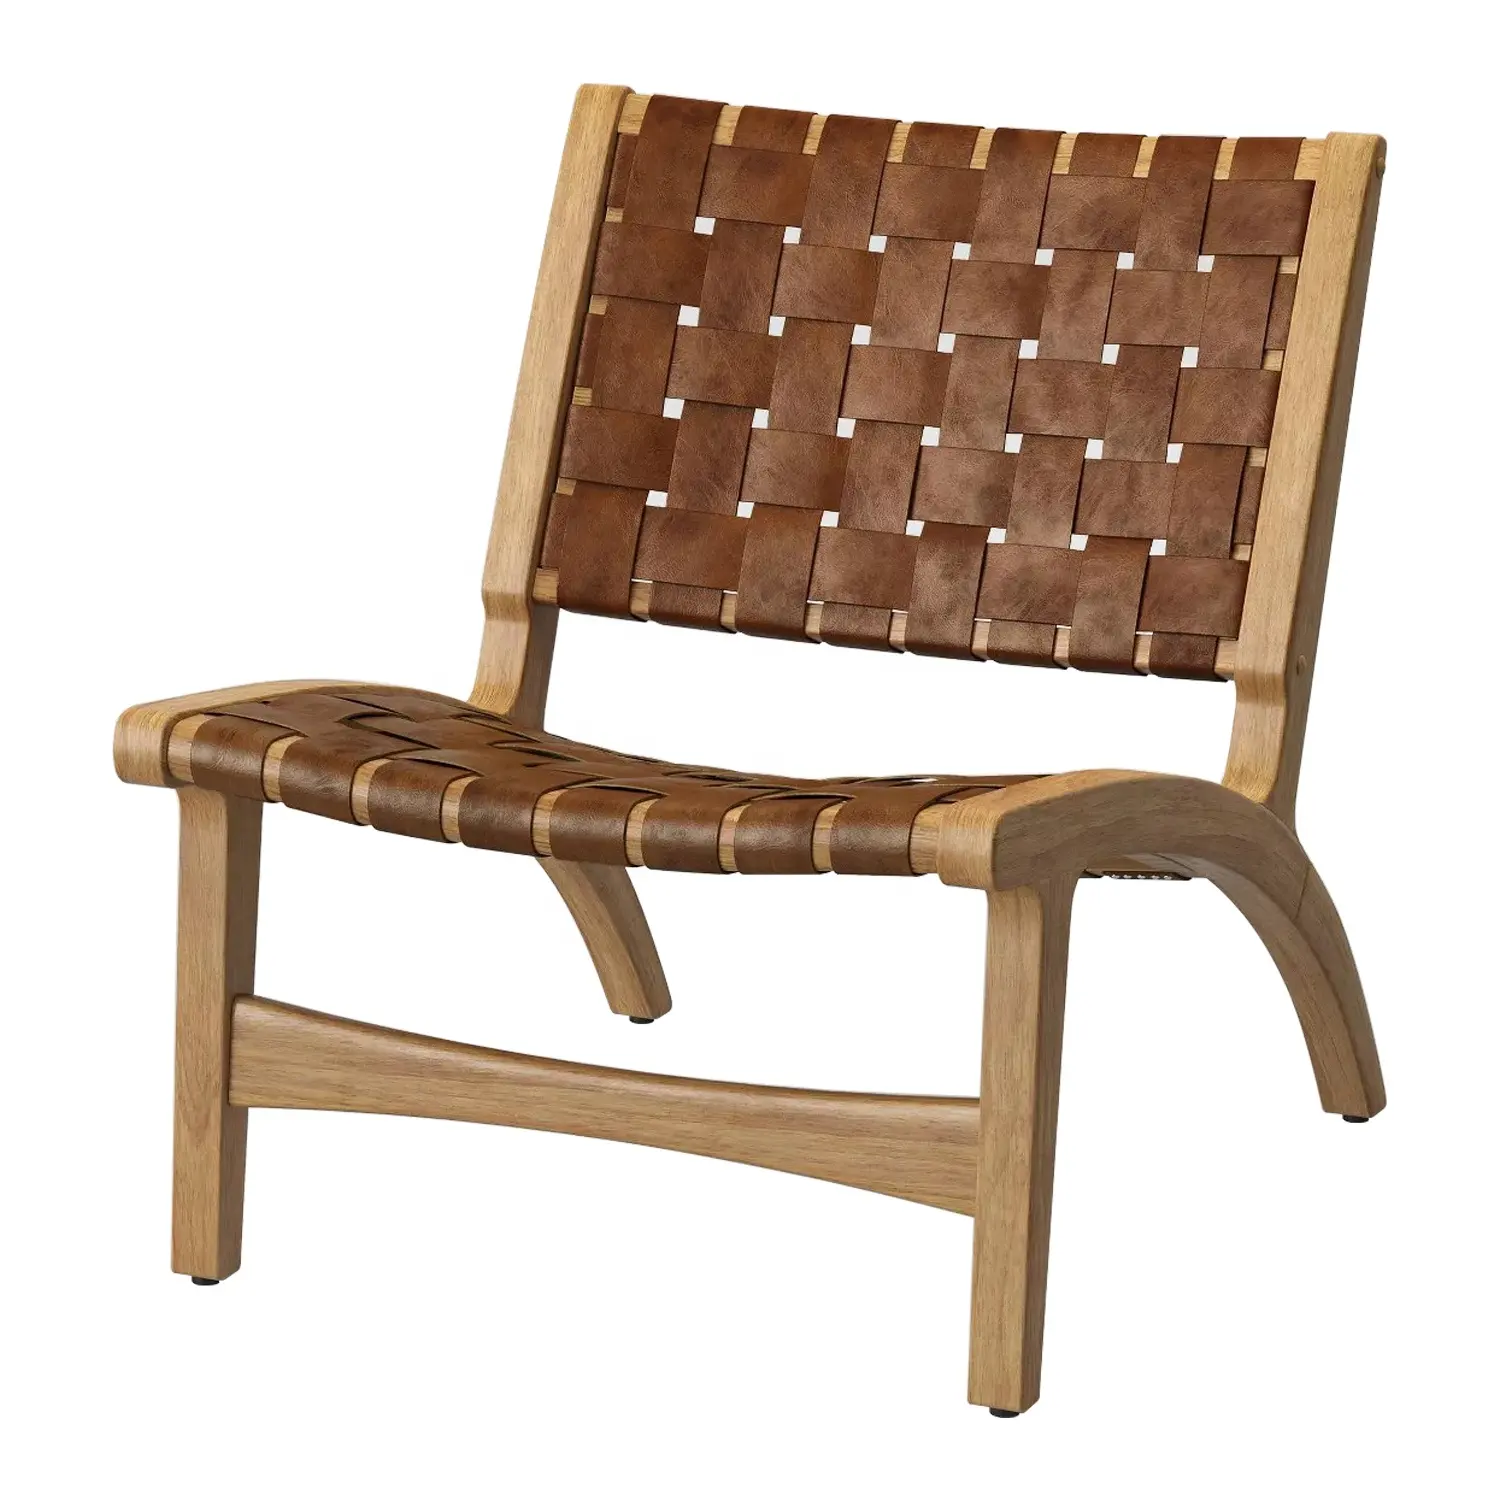 Kursi kayu desain Modern dengan kulit sintetis anyaman kayu Solid kursi jati untuk rumah atau fasilitas santai ruang tamu